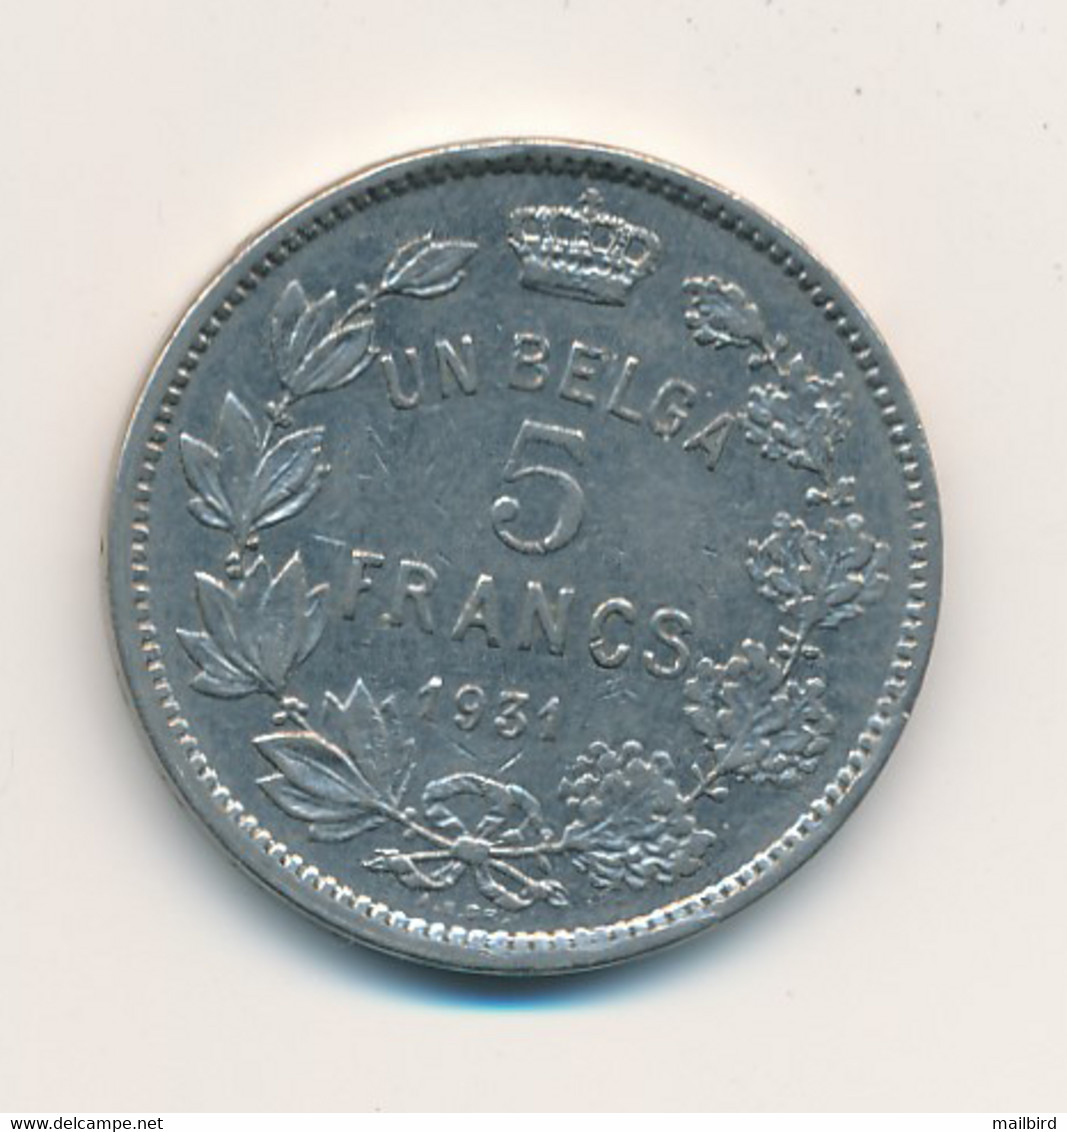 BELGIUM België Belgique - UN BELGA 5 Francs 1931 - 5 Francs & 1 Belga